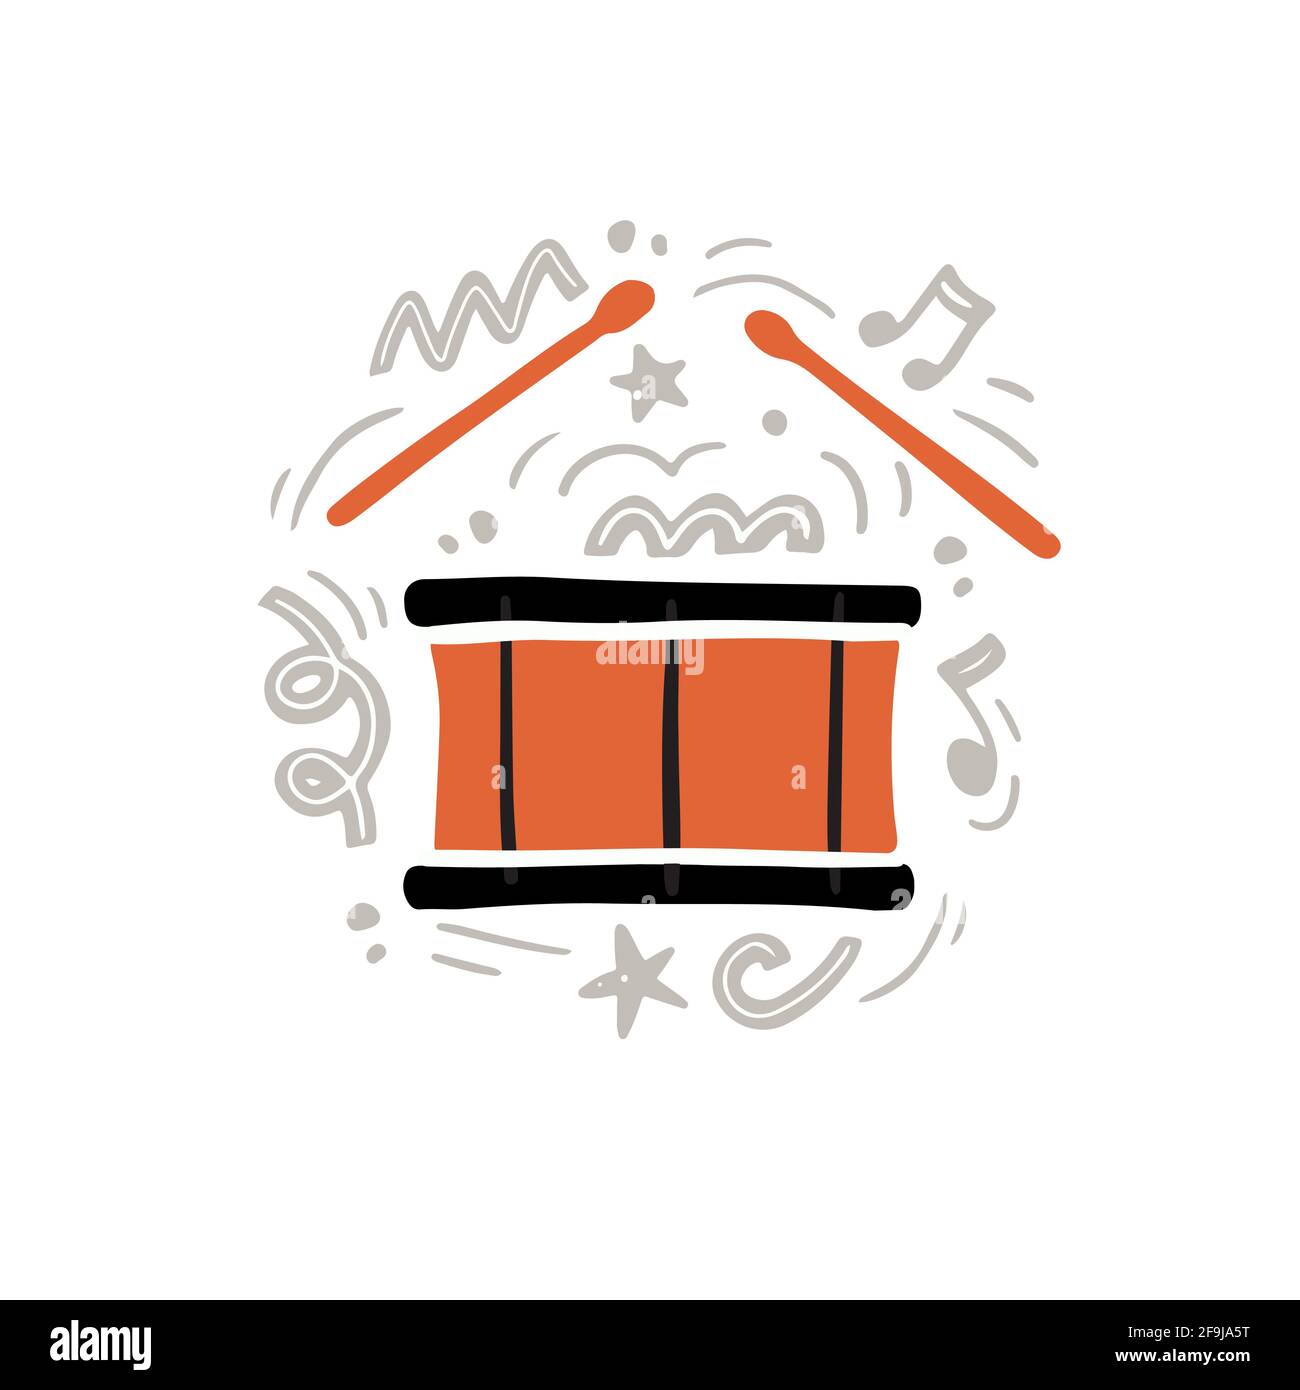 Illustration vectorielle créative de pilons orange jouant de la musique rythmique forte sur tambour traditionnel dessiné à la main dans un style minimaliste plat au milieu décorations et notes abstraites grises Illustration de Vecteur